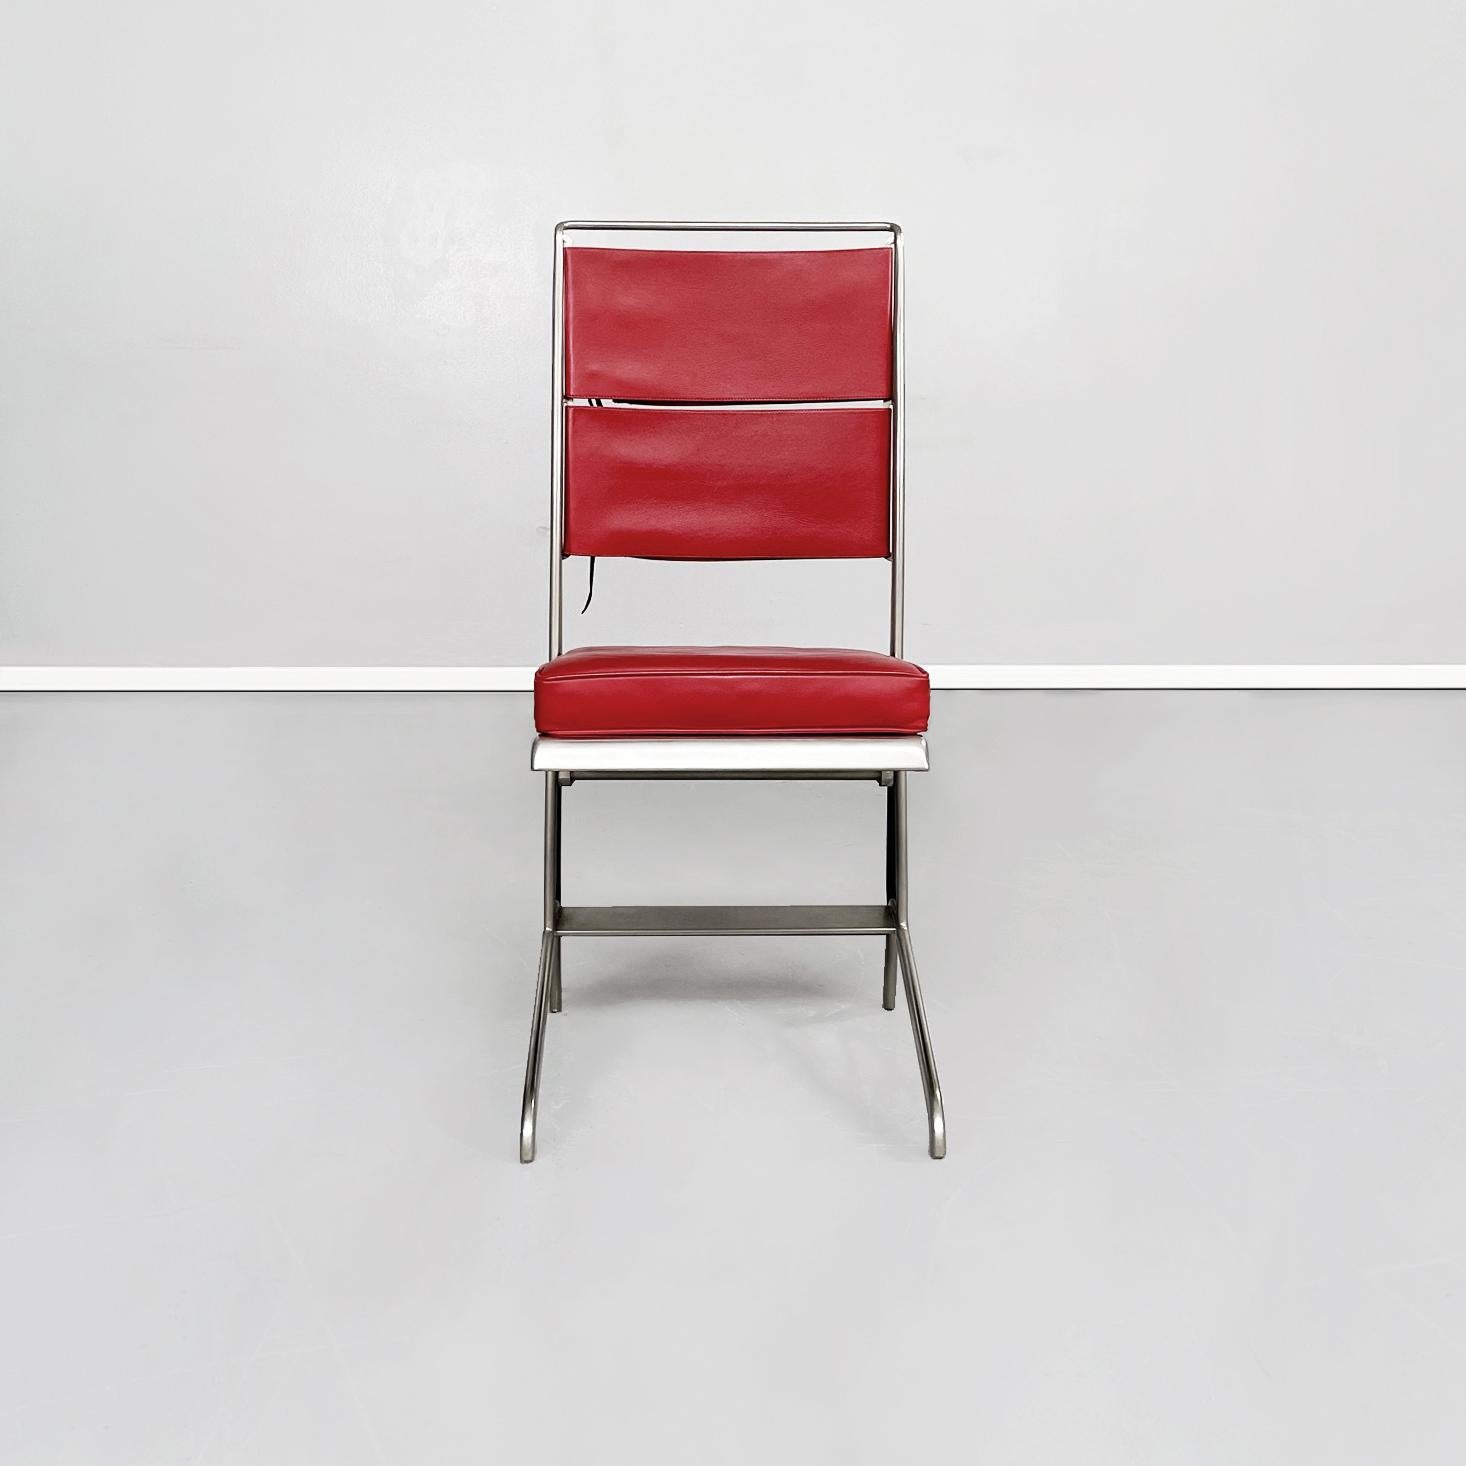 Chaise française du milieu du siècle en cuir rouge et acier par Jean Prouvé pour Tecta, 1980
Chaise avec structure en acier et siège refermable. L'assise est constituée d'un coussin rembourré recouvert de cuir rouge, tandis que le dossier est